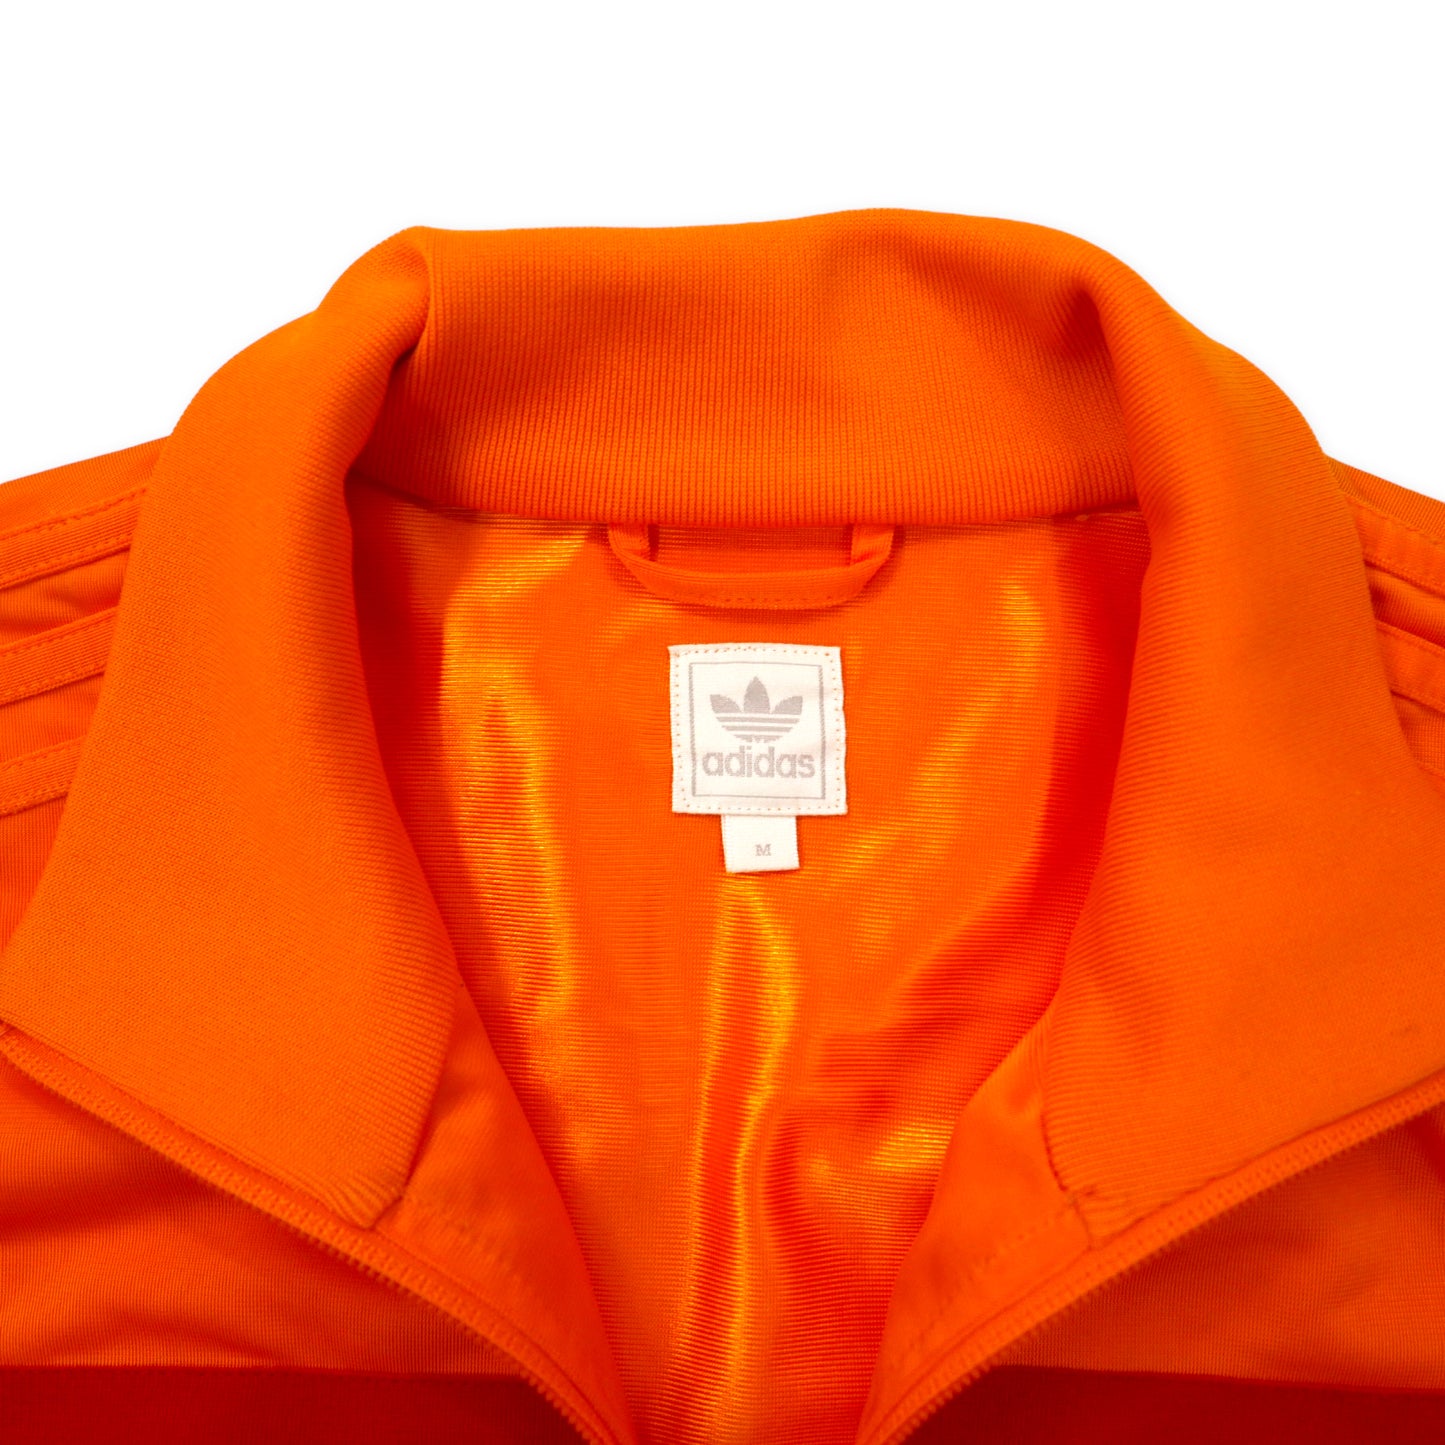 adidas originals トラックジャケット ジャージ M オレンジ トリコロール 3ストライプ トレフォイル 刺繍 1988 オランダ代表 635537